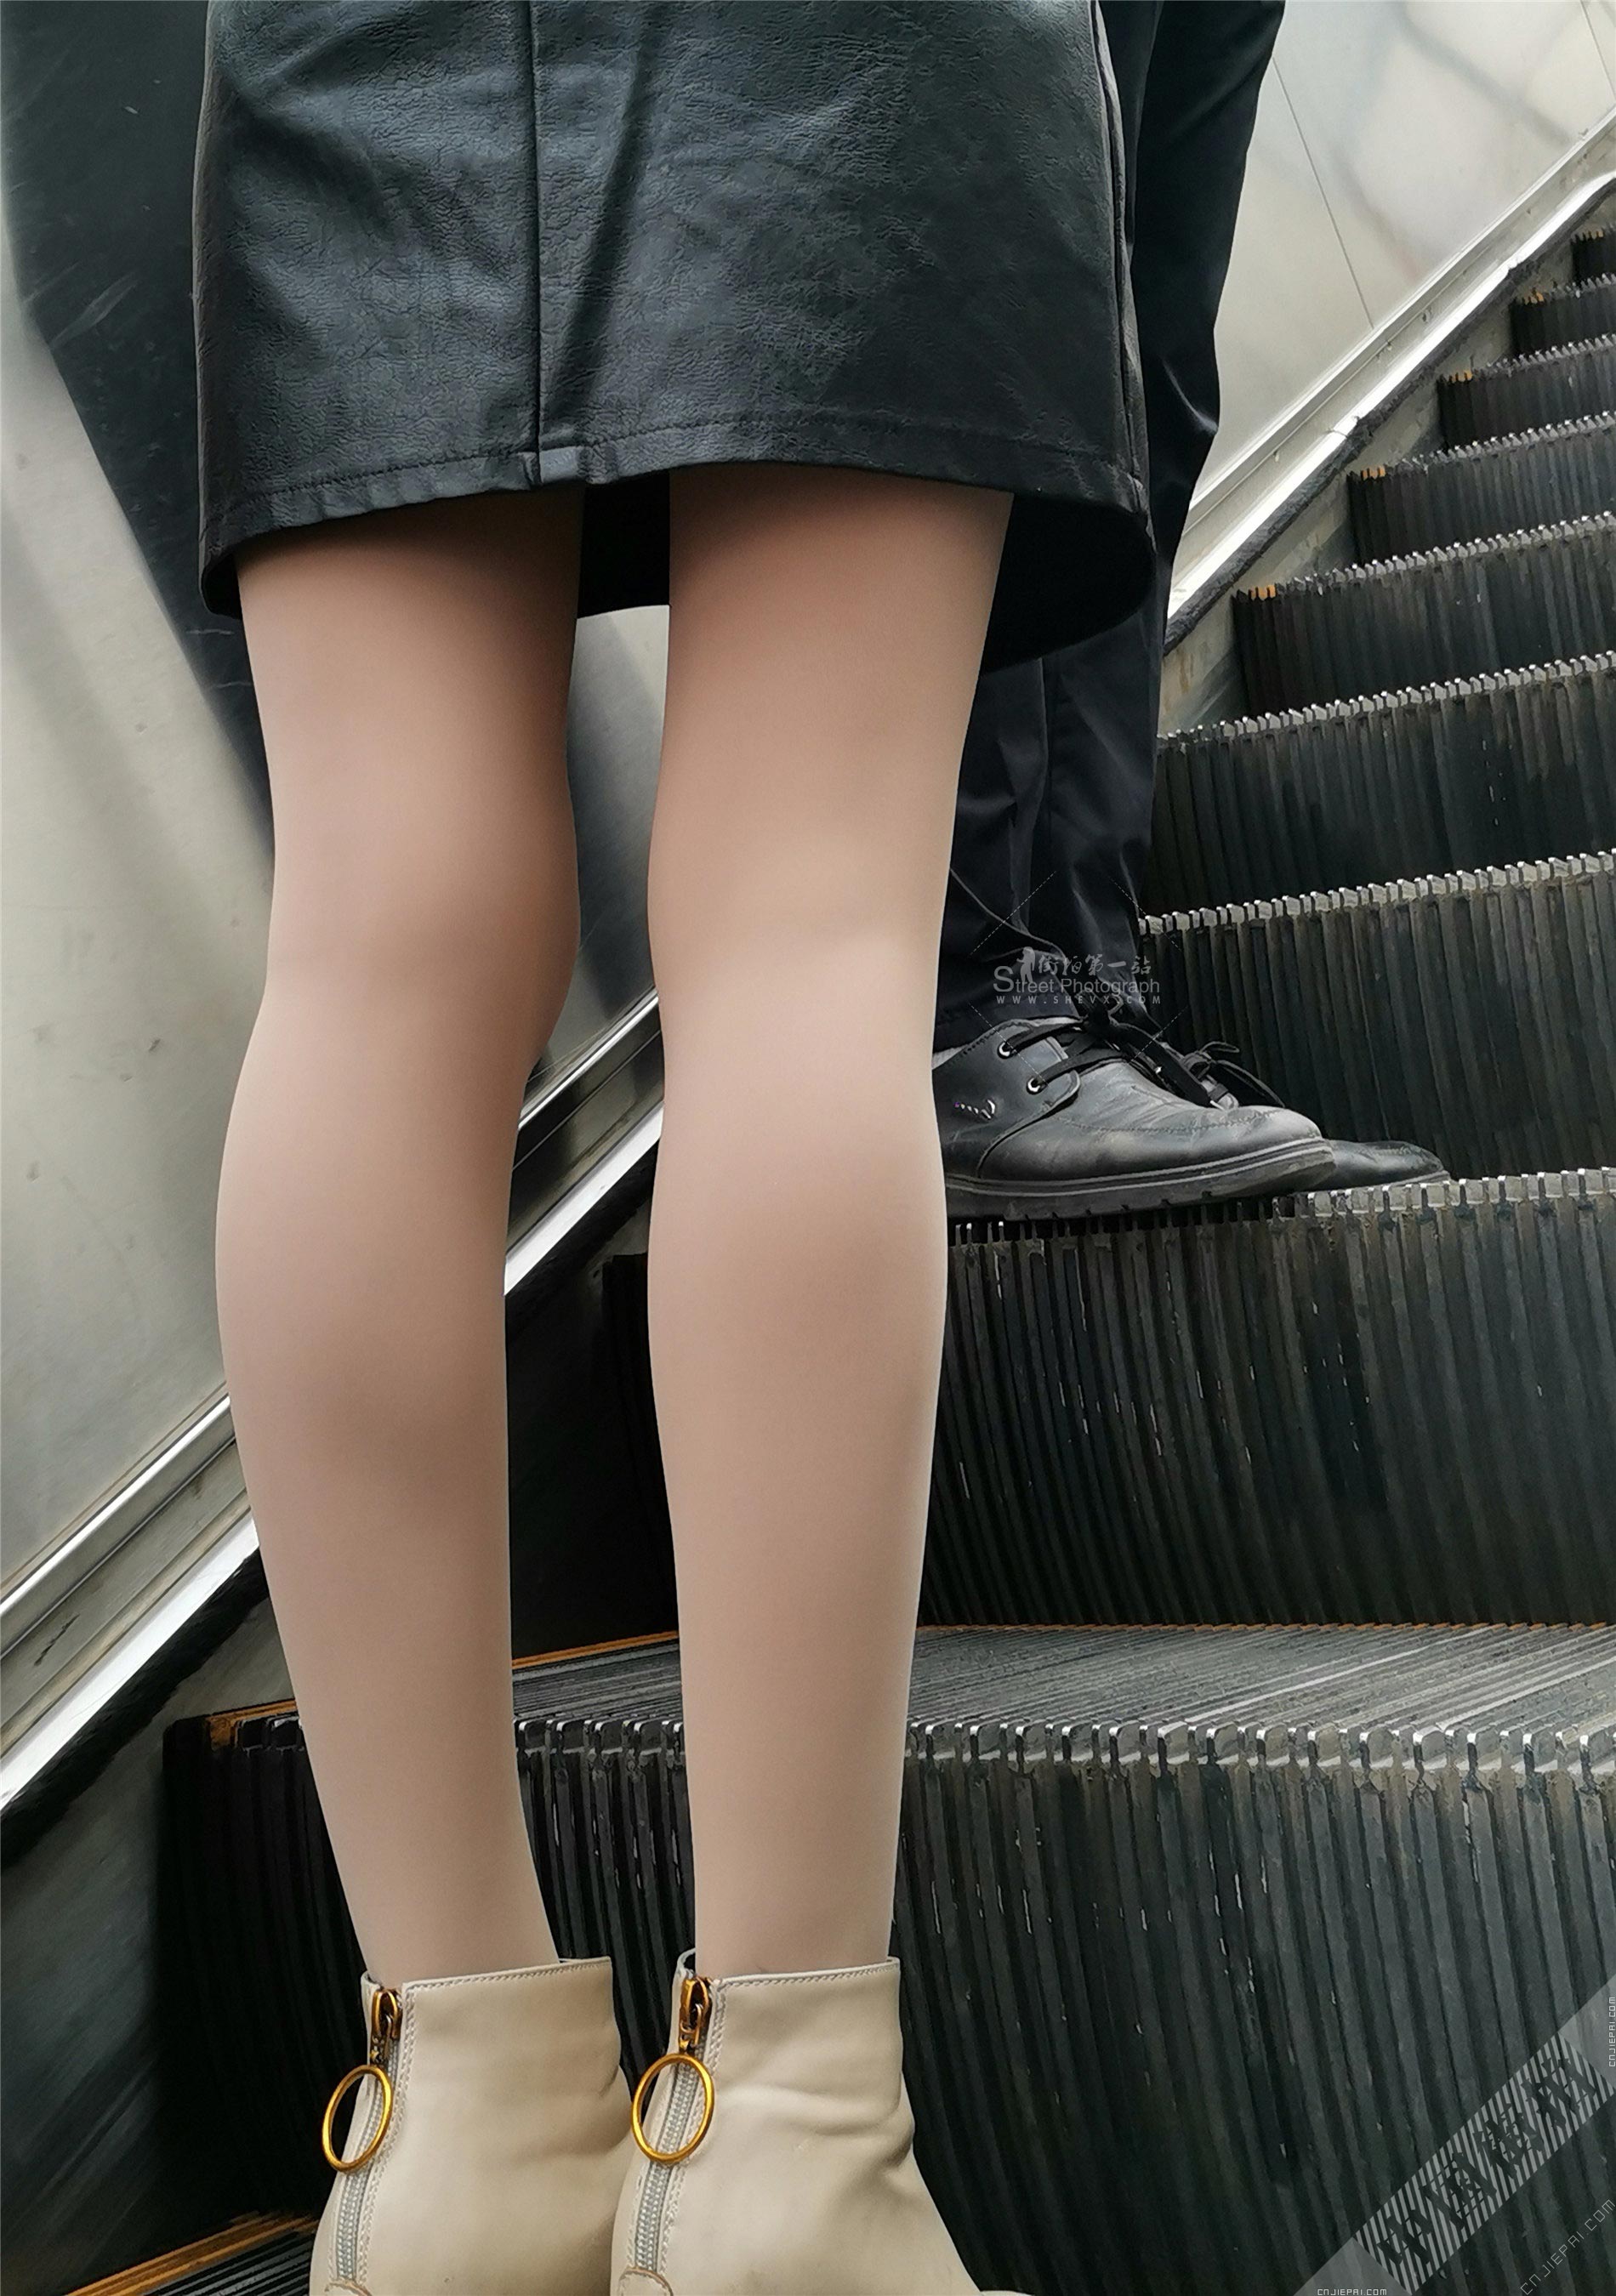 抓拍电梯上厚肉丝少妇光滑的双腿 图11